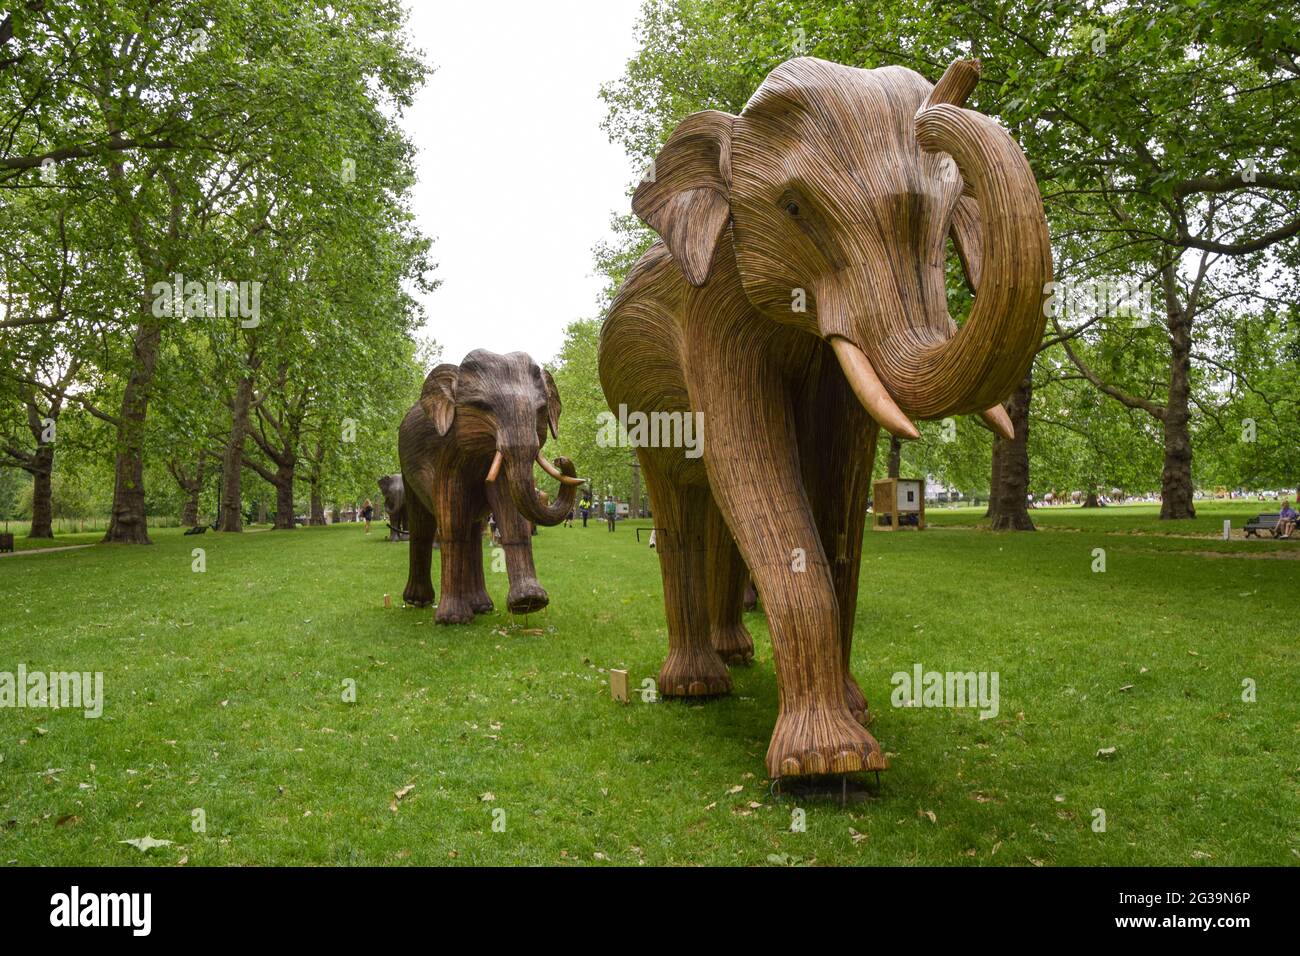 Londres, Royaume-Uni. 14 juin 2021. Sculptures d'éléphants à Green Park, Londres.partie de l'installation d'art de coexistence, qui vise à éclairer l'empiètement croissant des humains sur les lieux sauvages, chaque éléphant est créé à partir de Lantana camara, une espèce végétale toxique, envahissante et dommageable. Crédit : SOPA Images Limited/Alamy Live News Banque D'Images